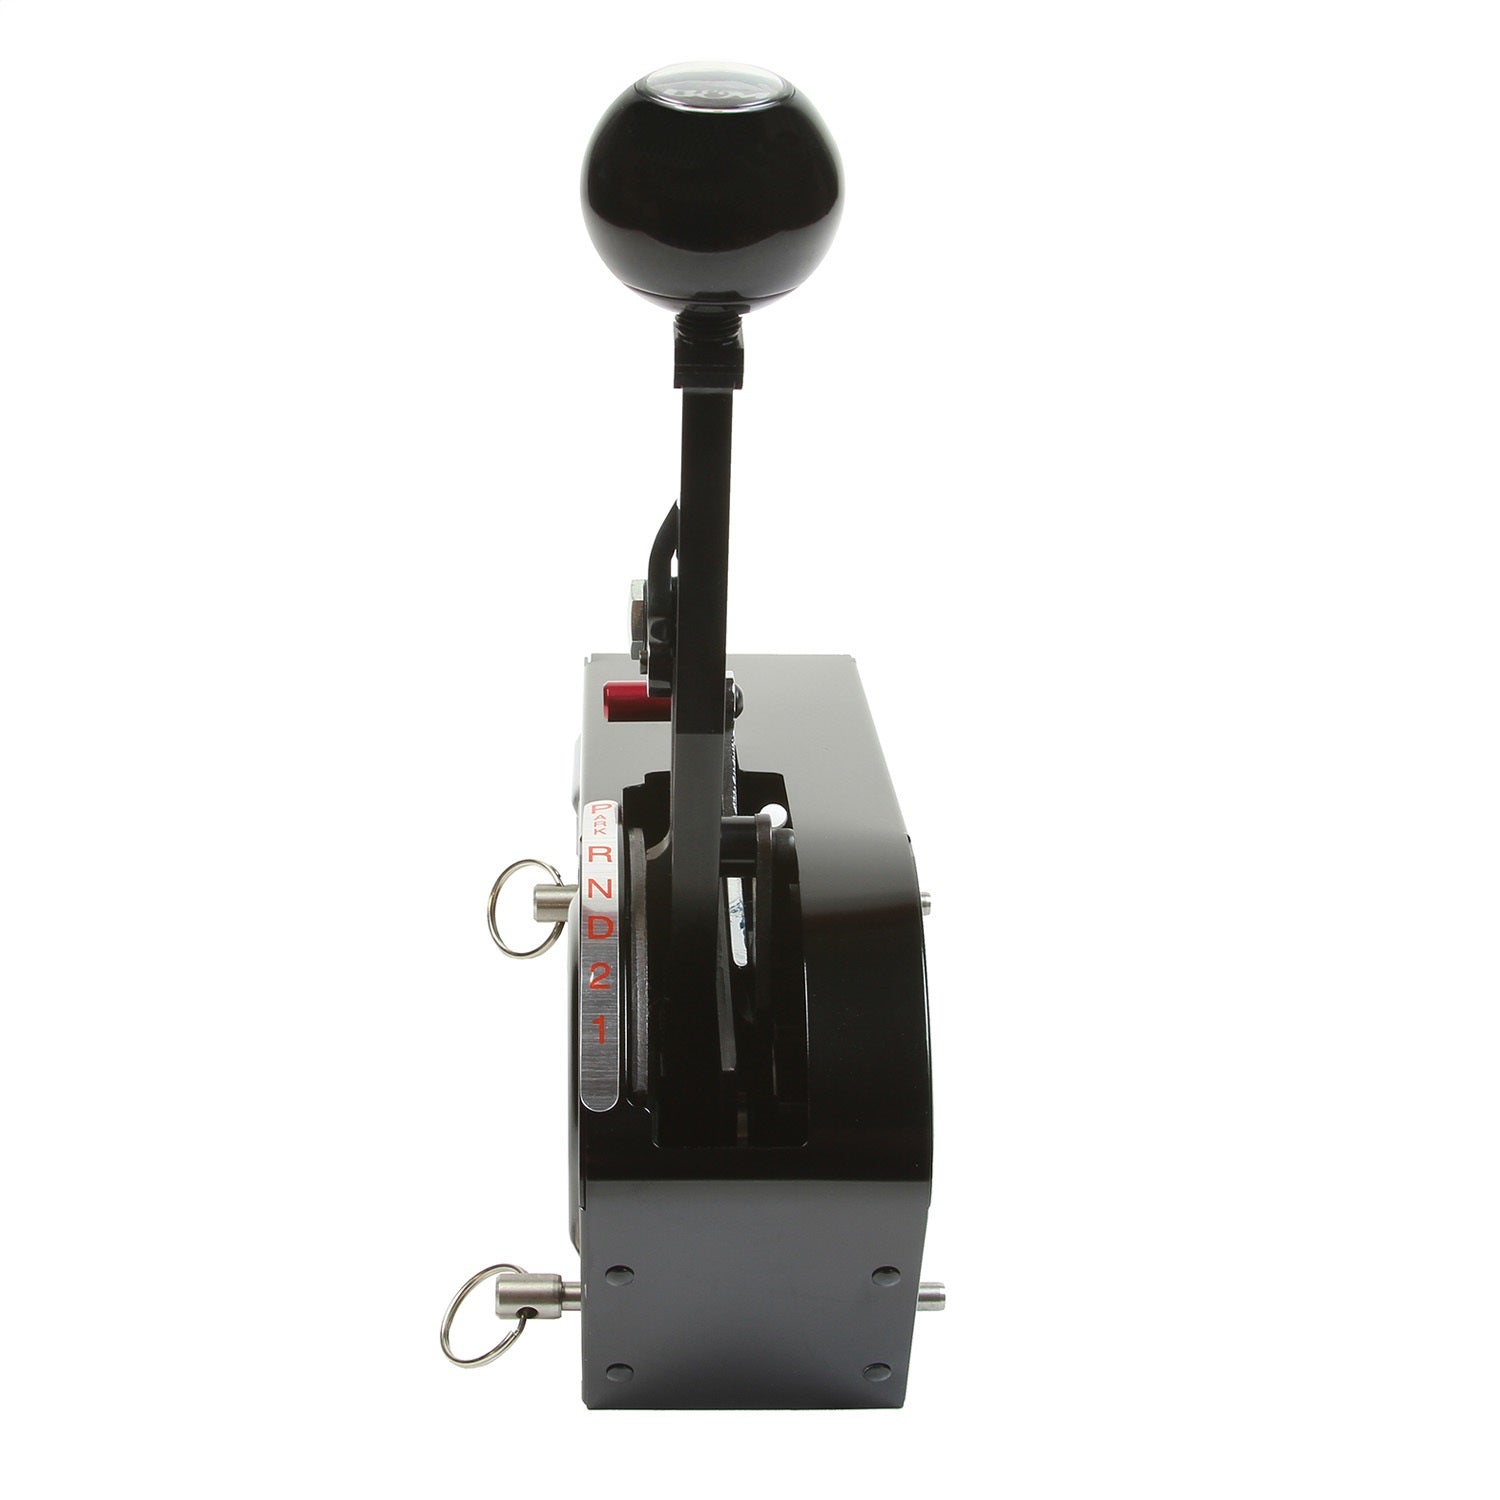 B&M 81706 Pro Stick Automatic Shifter